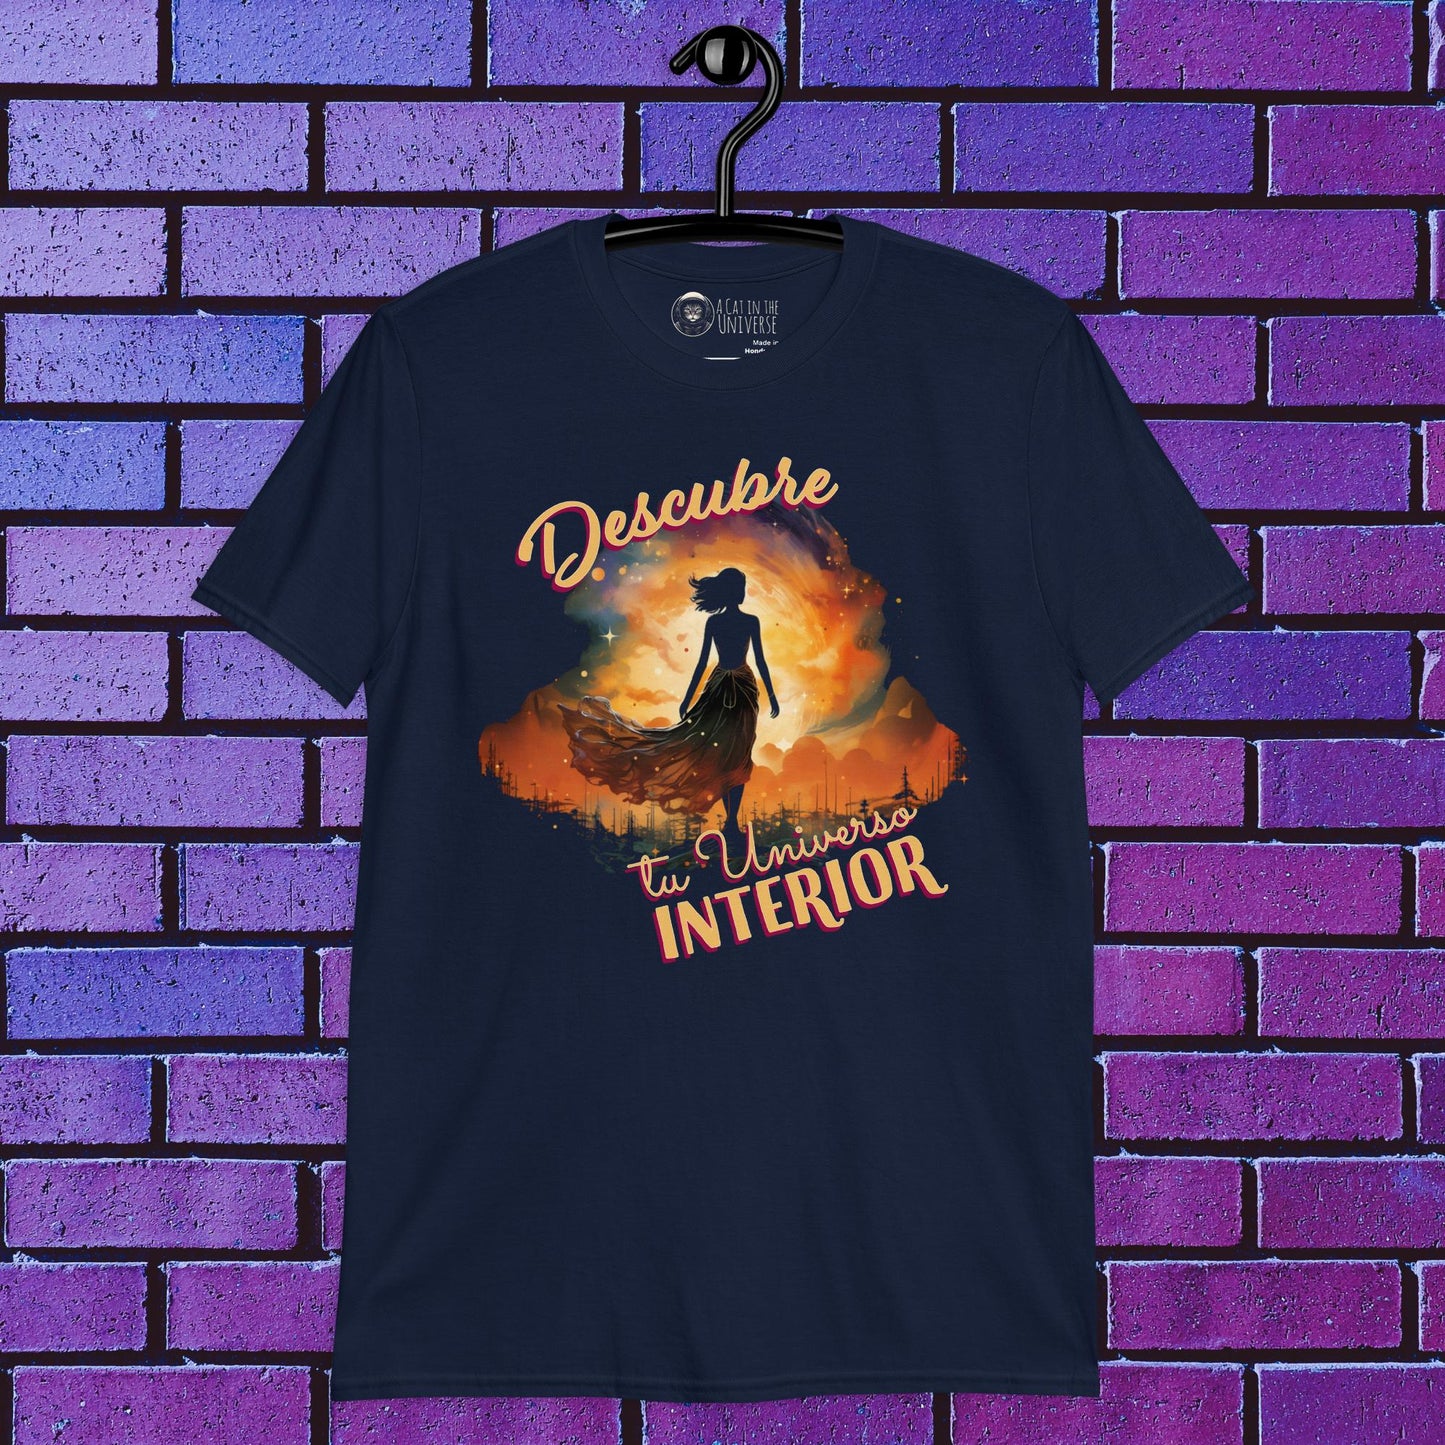 Camiseta "Descubre tu universo interior"